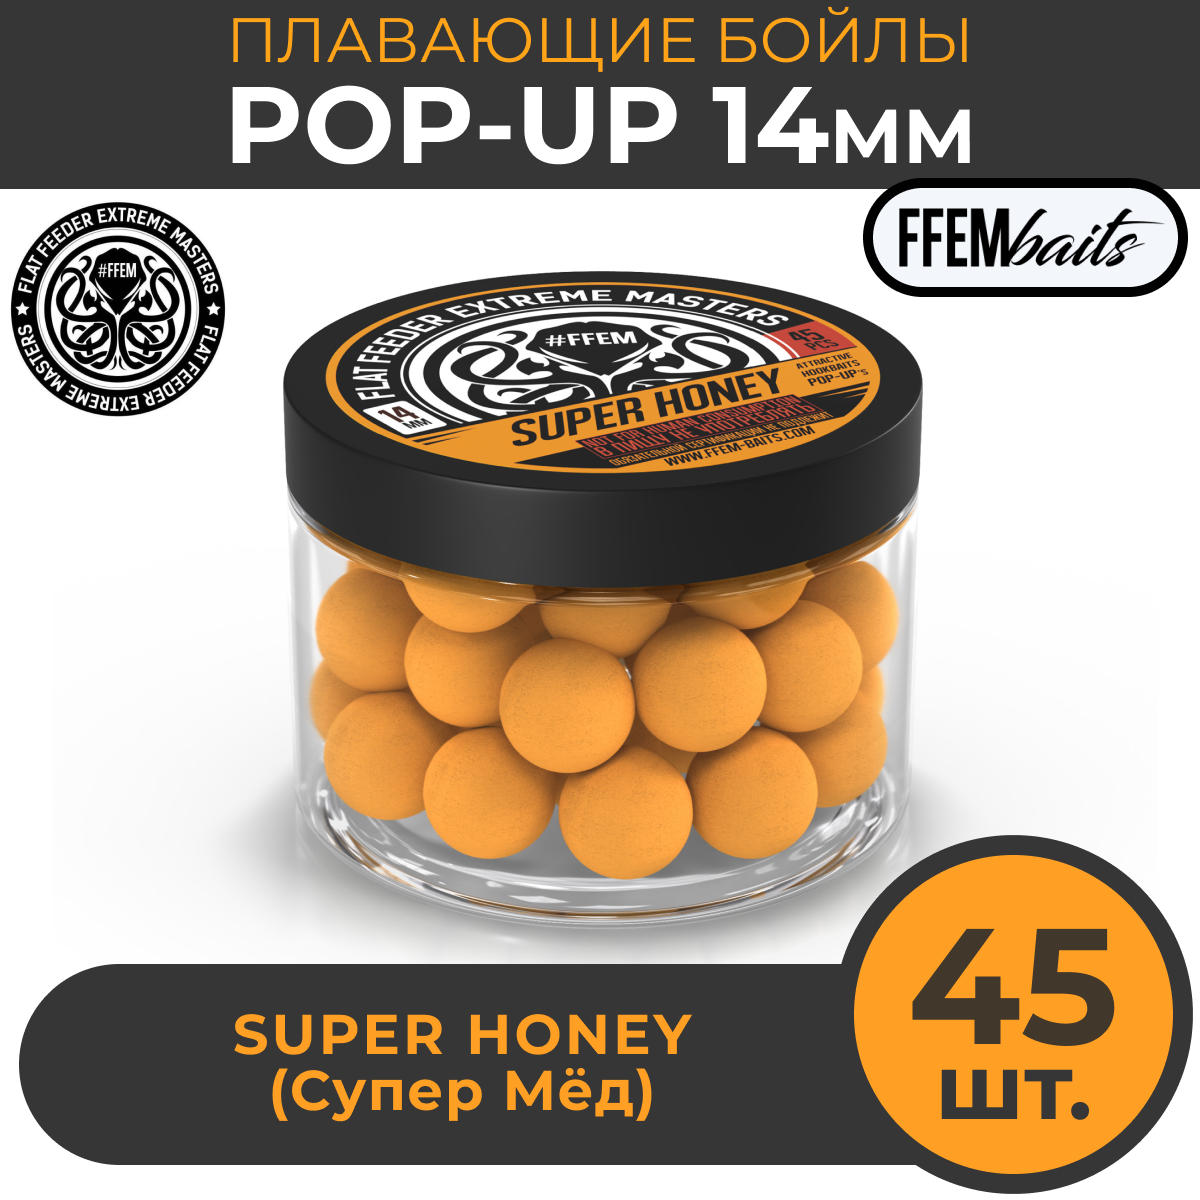 Плавающие бойлы POP-UP 14 мм Super Honey Мёд, 150мл (45шт), супер аттрактивные плавающие насадочные бойлы поп-ап / FFEM Поп ап 14мм